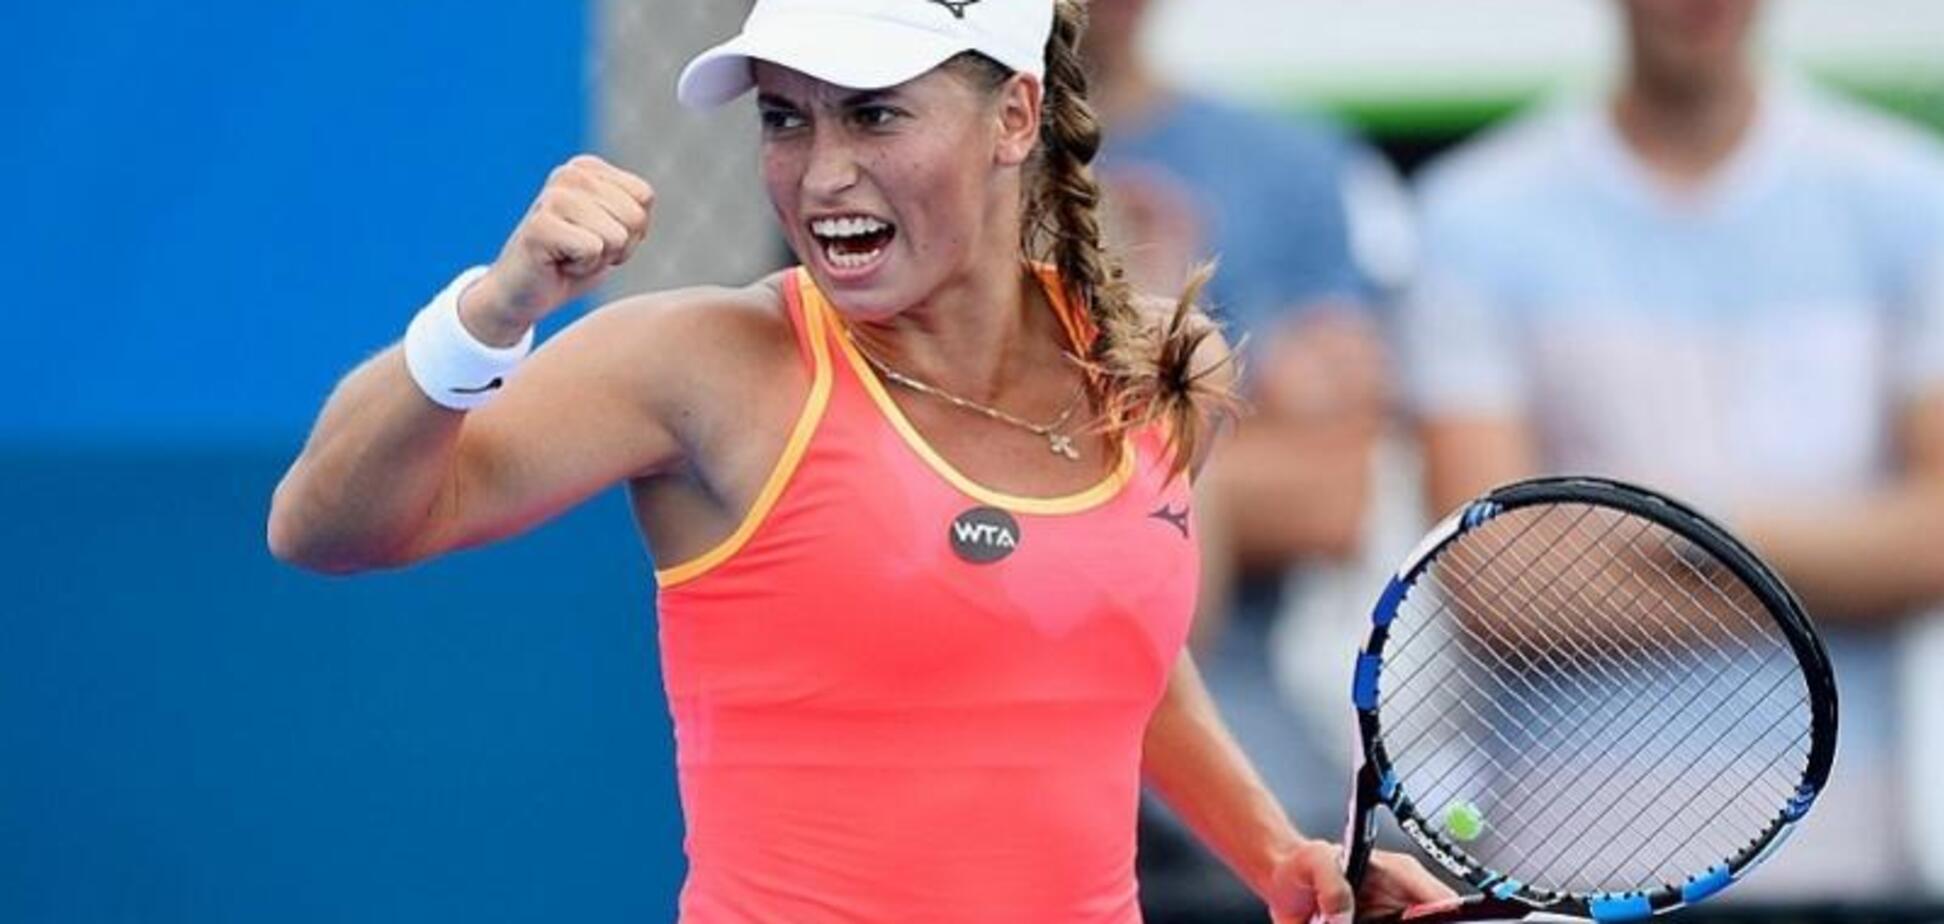 Московская теннисистка угодила в позорный скандал на Australian Open